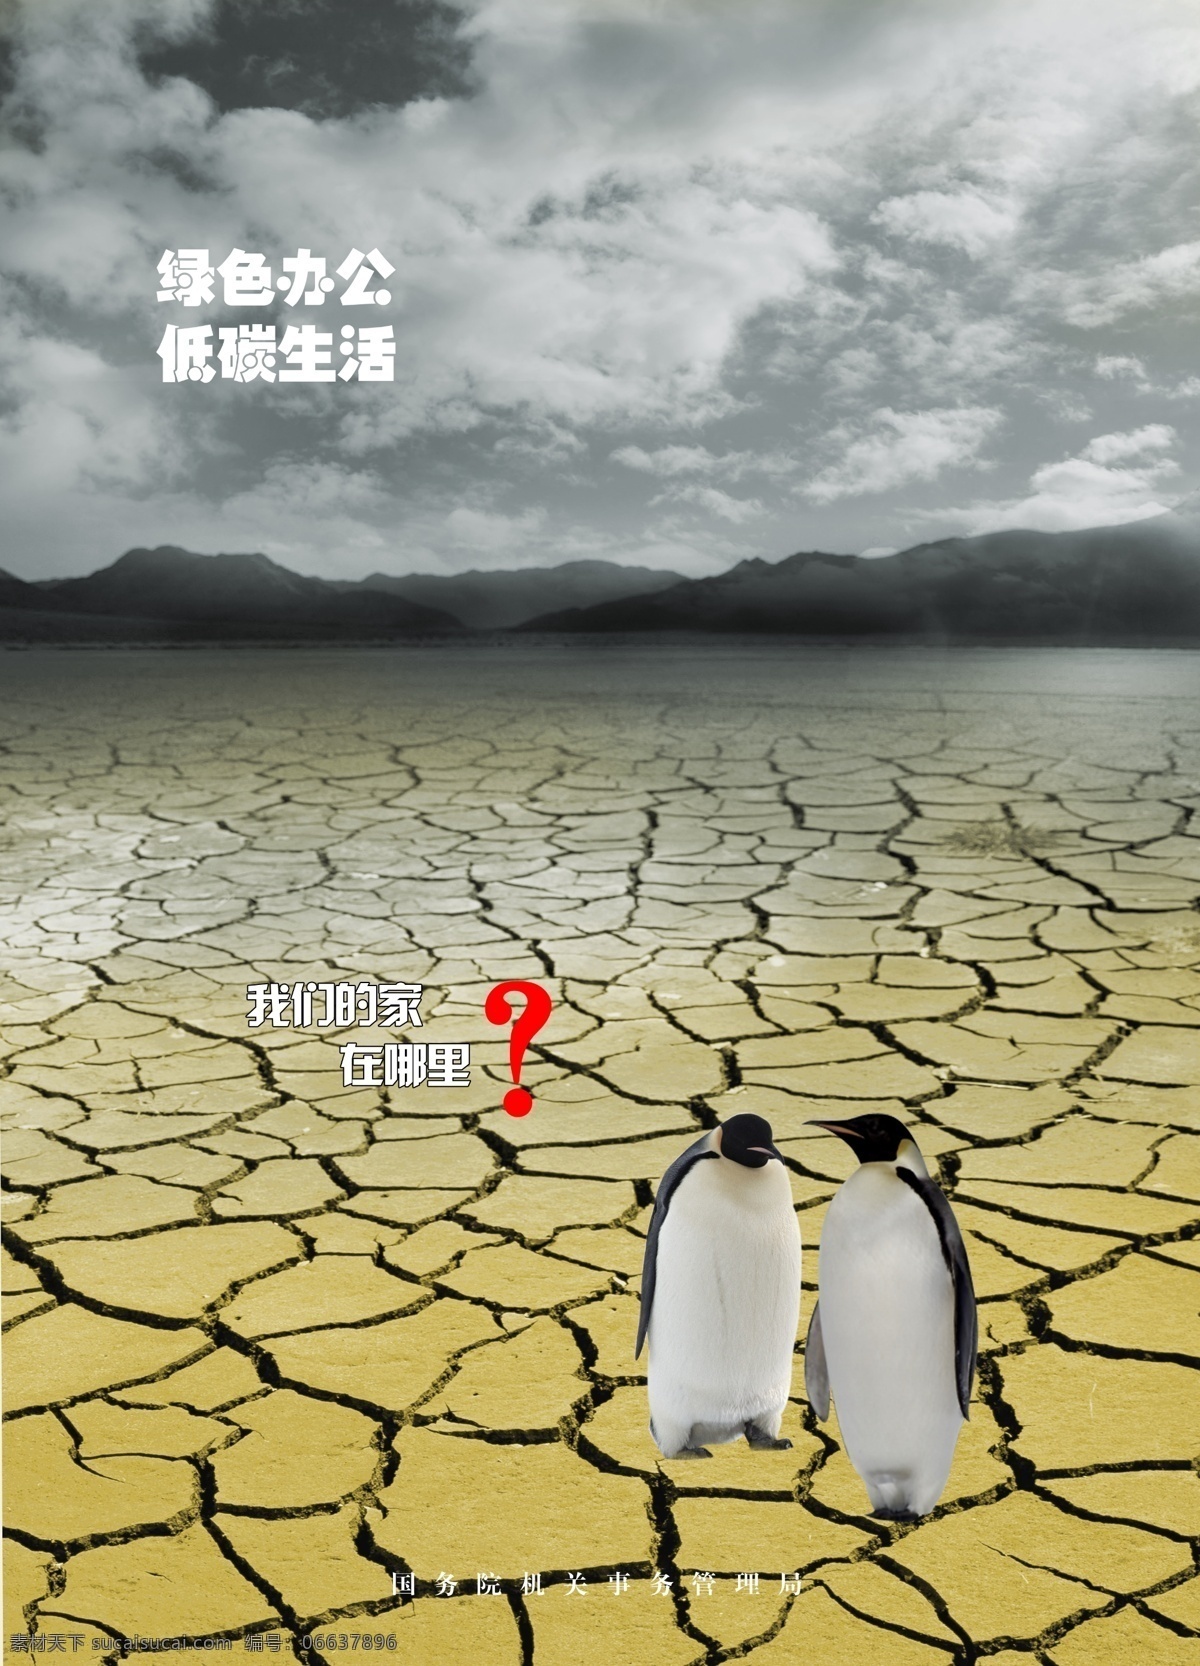 公益广告展板 公益广告 绿色办公 低碳生活 企鹅 干裂的土地 节约用水